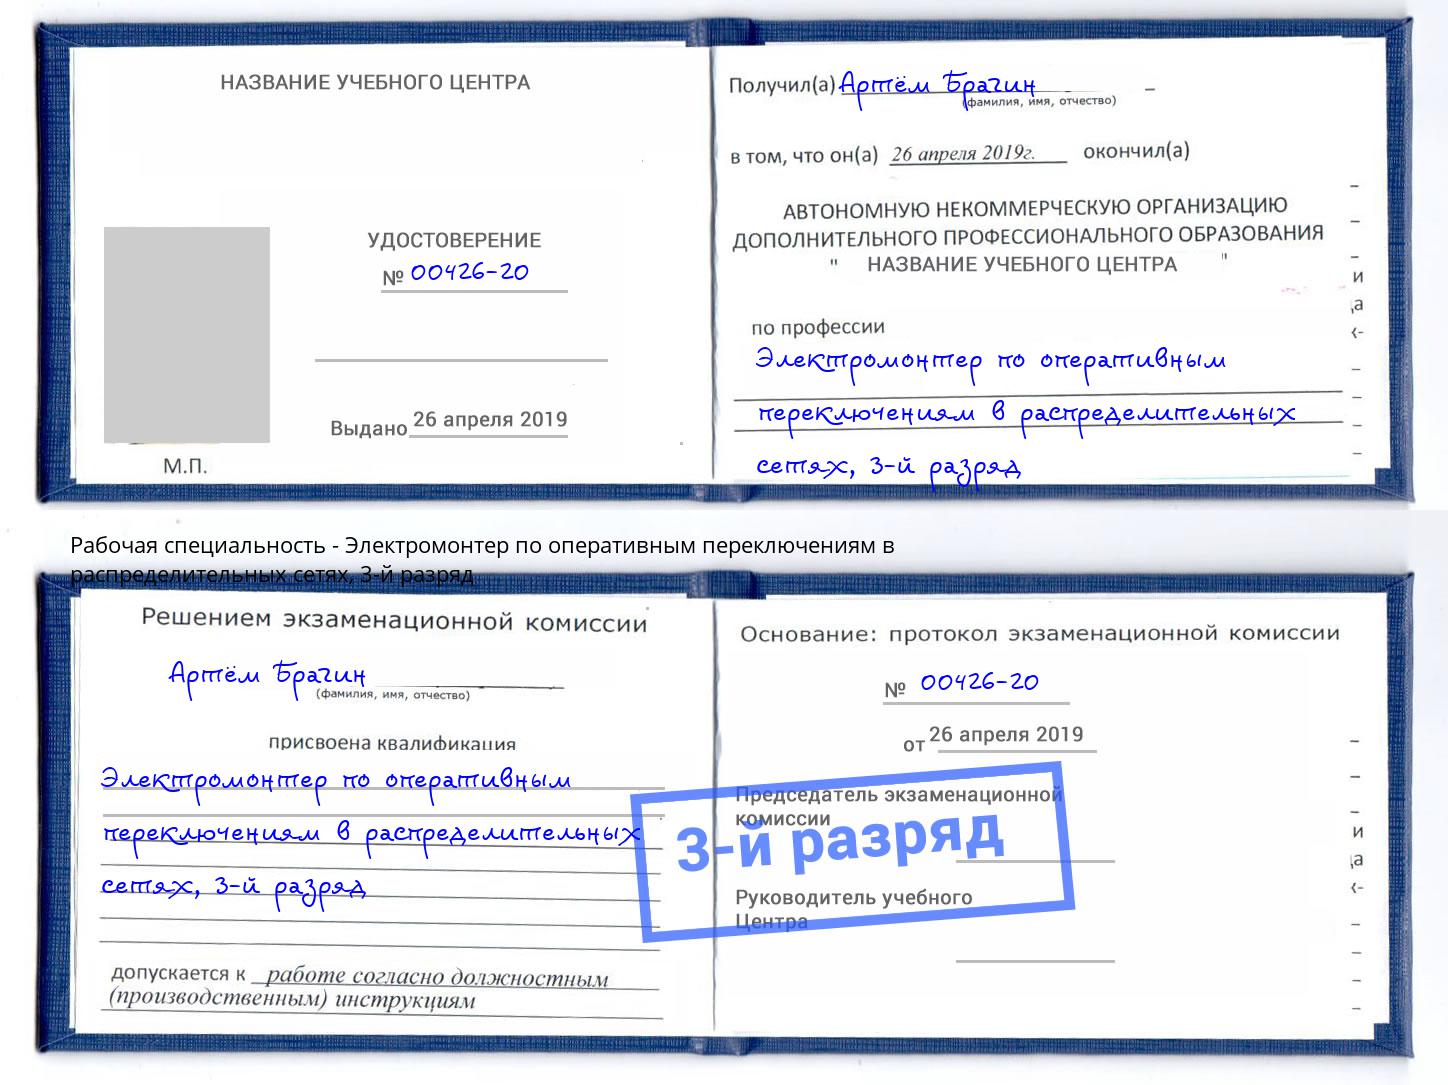 корочка 3-й разряд Электромонтер по оперативным переключениям в распределительных сетях Астрахань